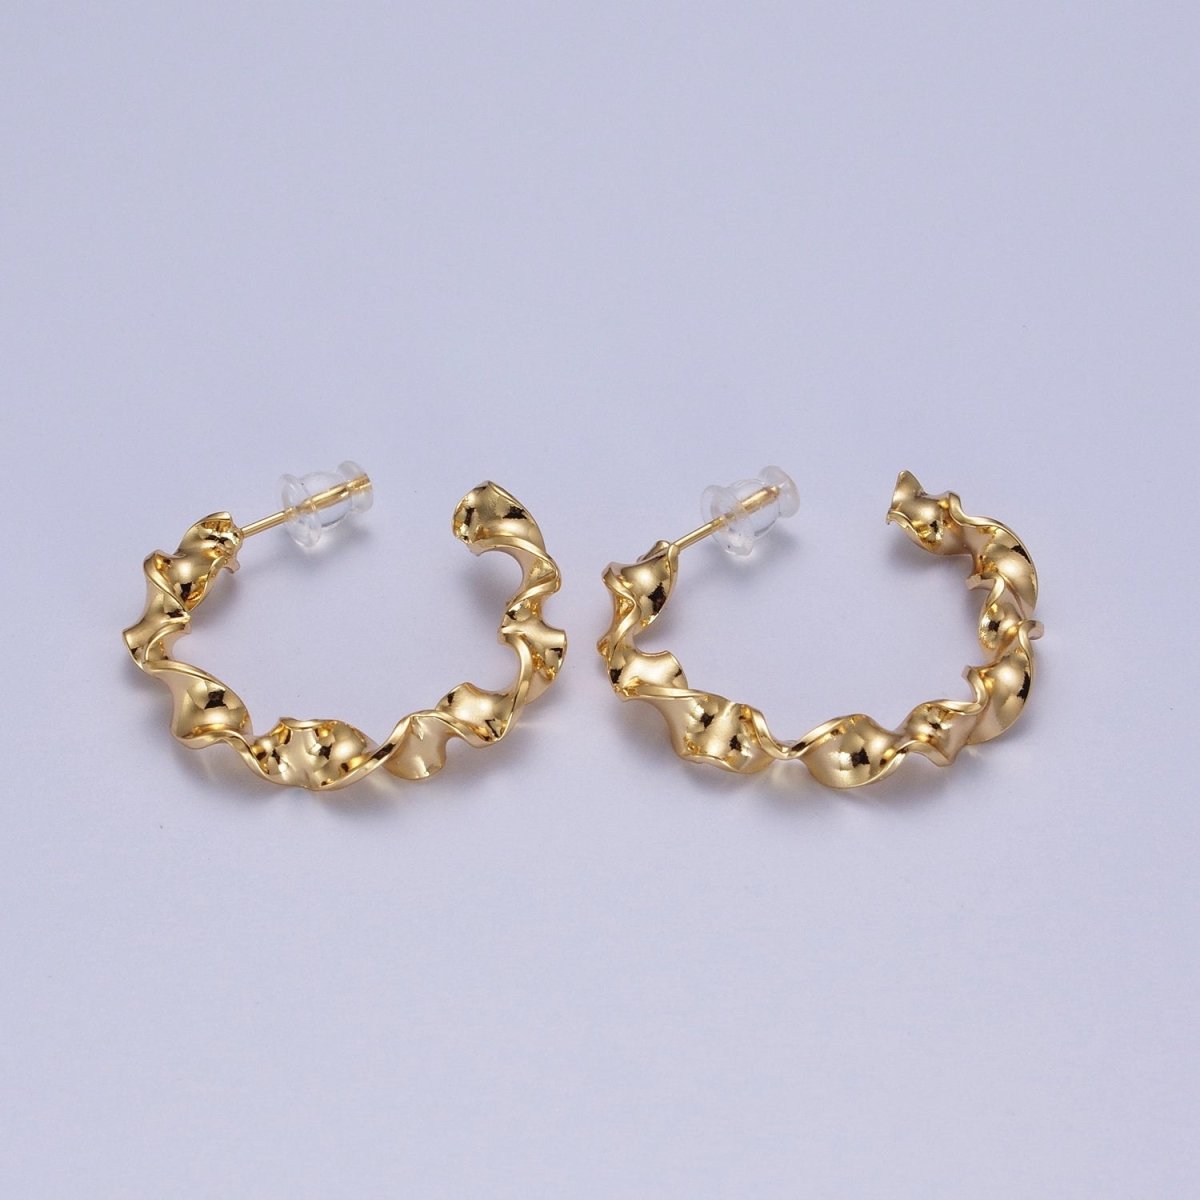 Modern Gold Hoop Earrings, Gold Hoops, Bold Hoop Earrings, Twisted Hoop Earrings, Dainty Hoops, Hammered Rustic Earring Y-065 - DLUXCA